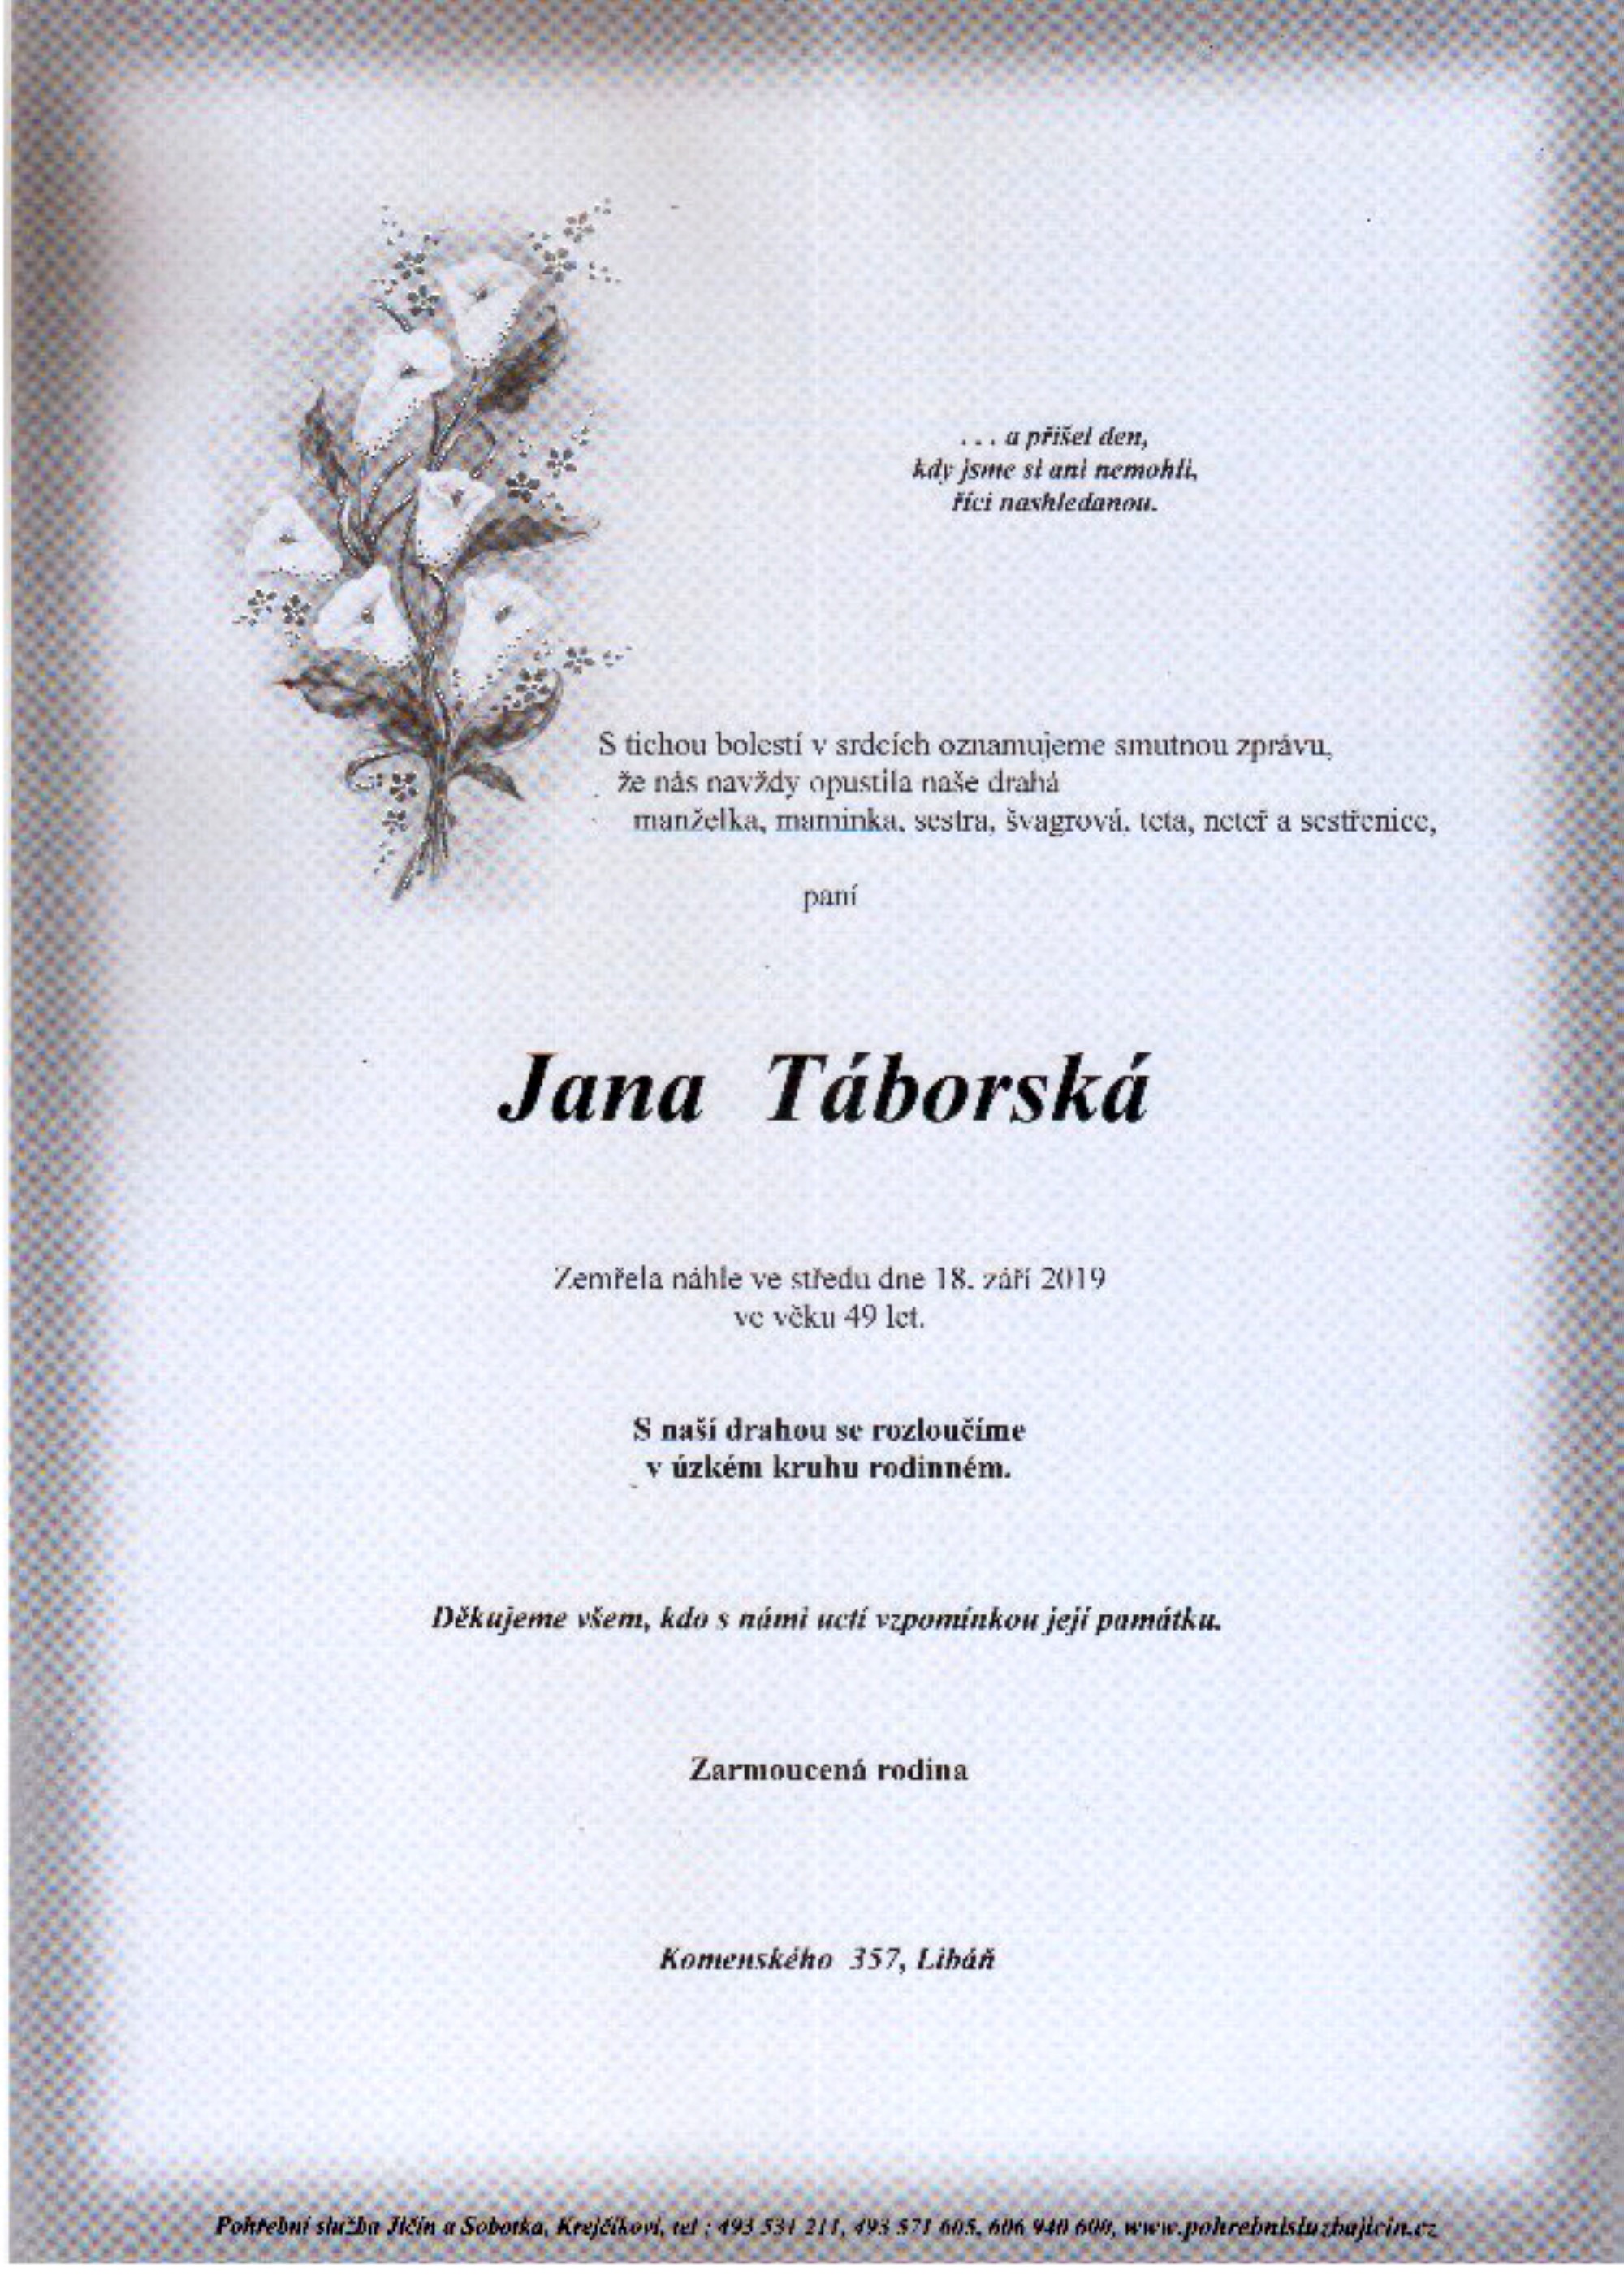 Jana Táborská